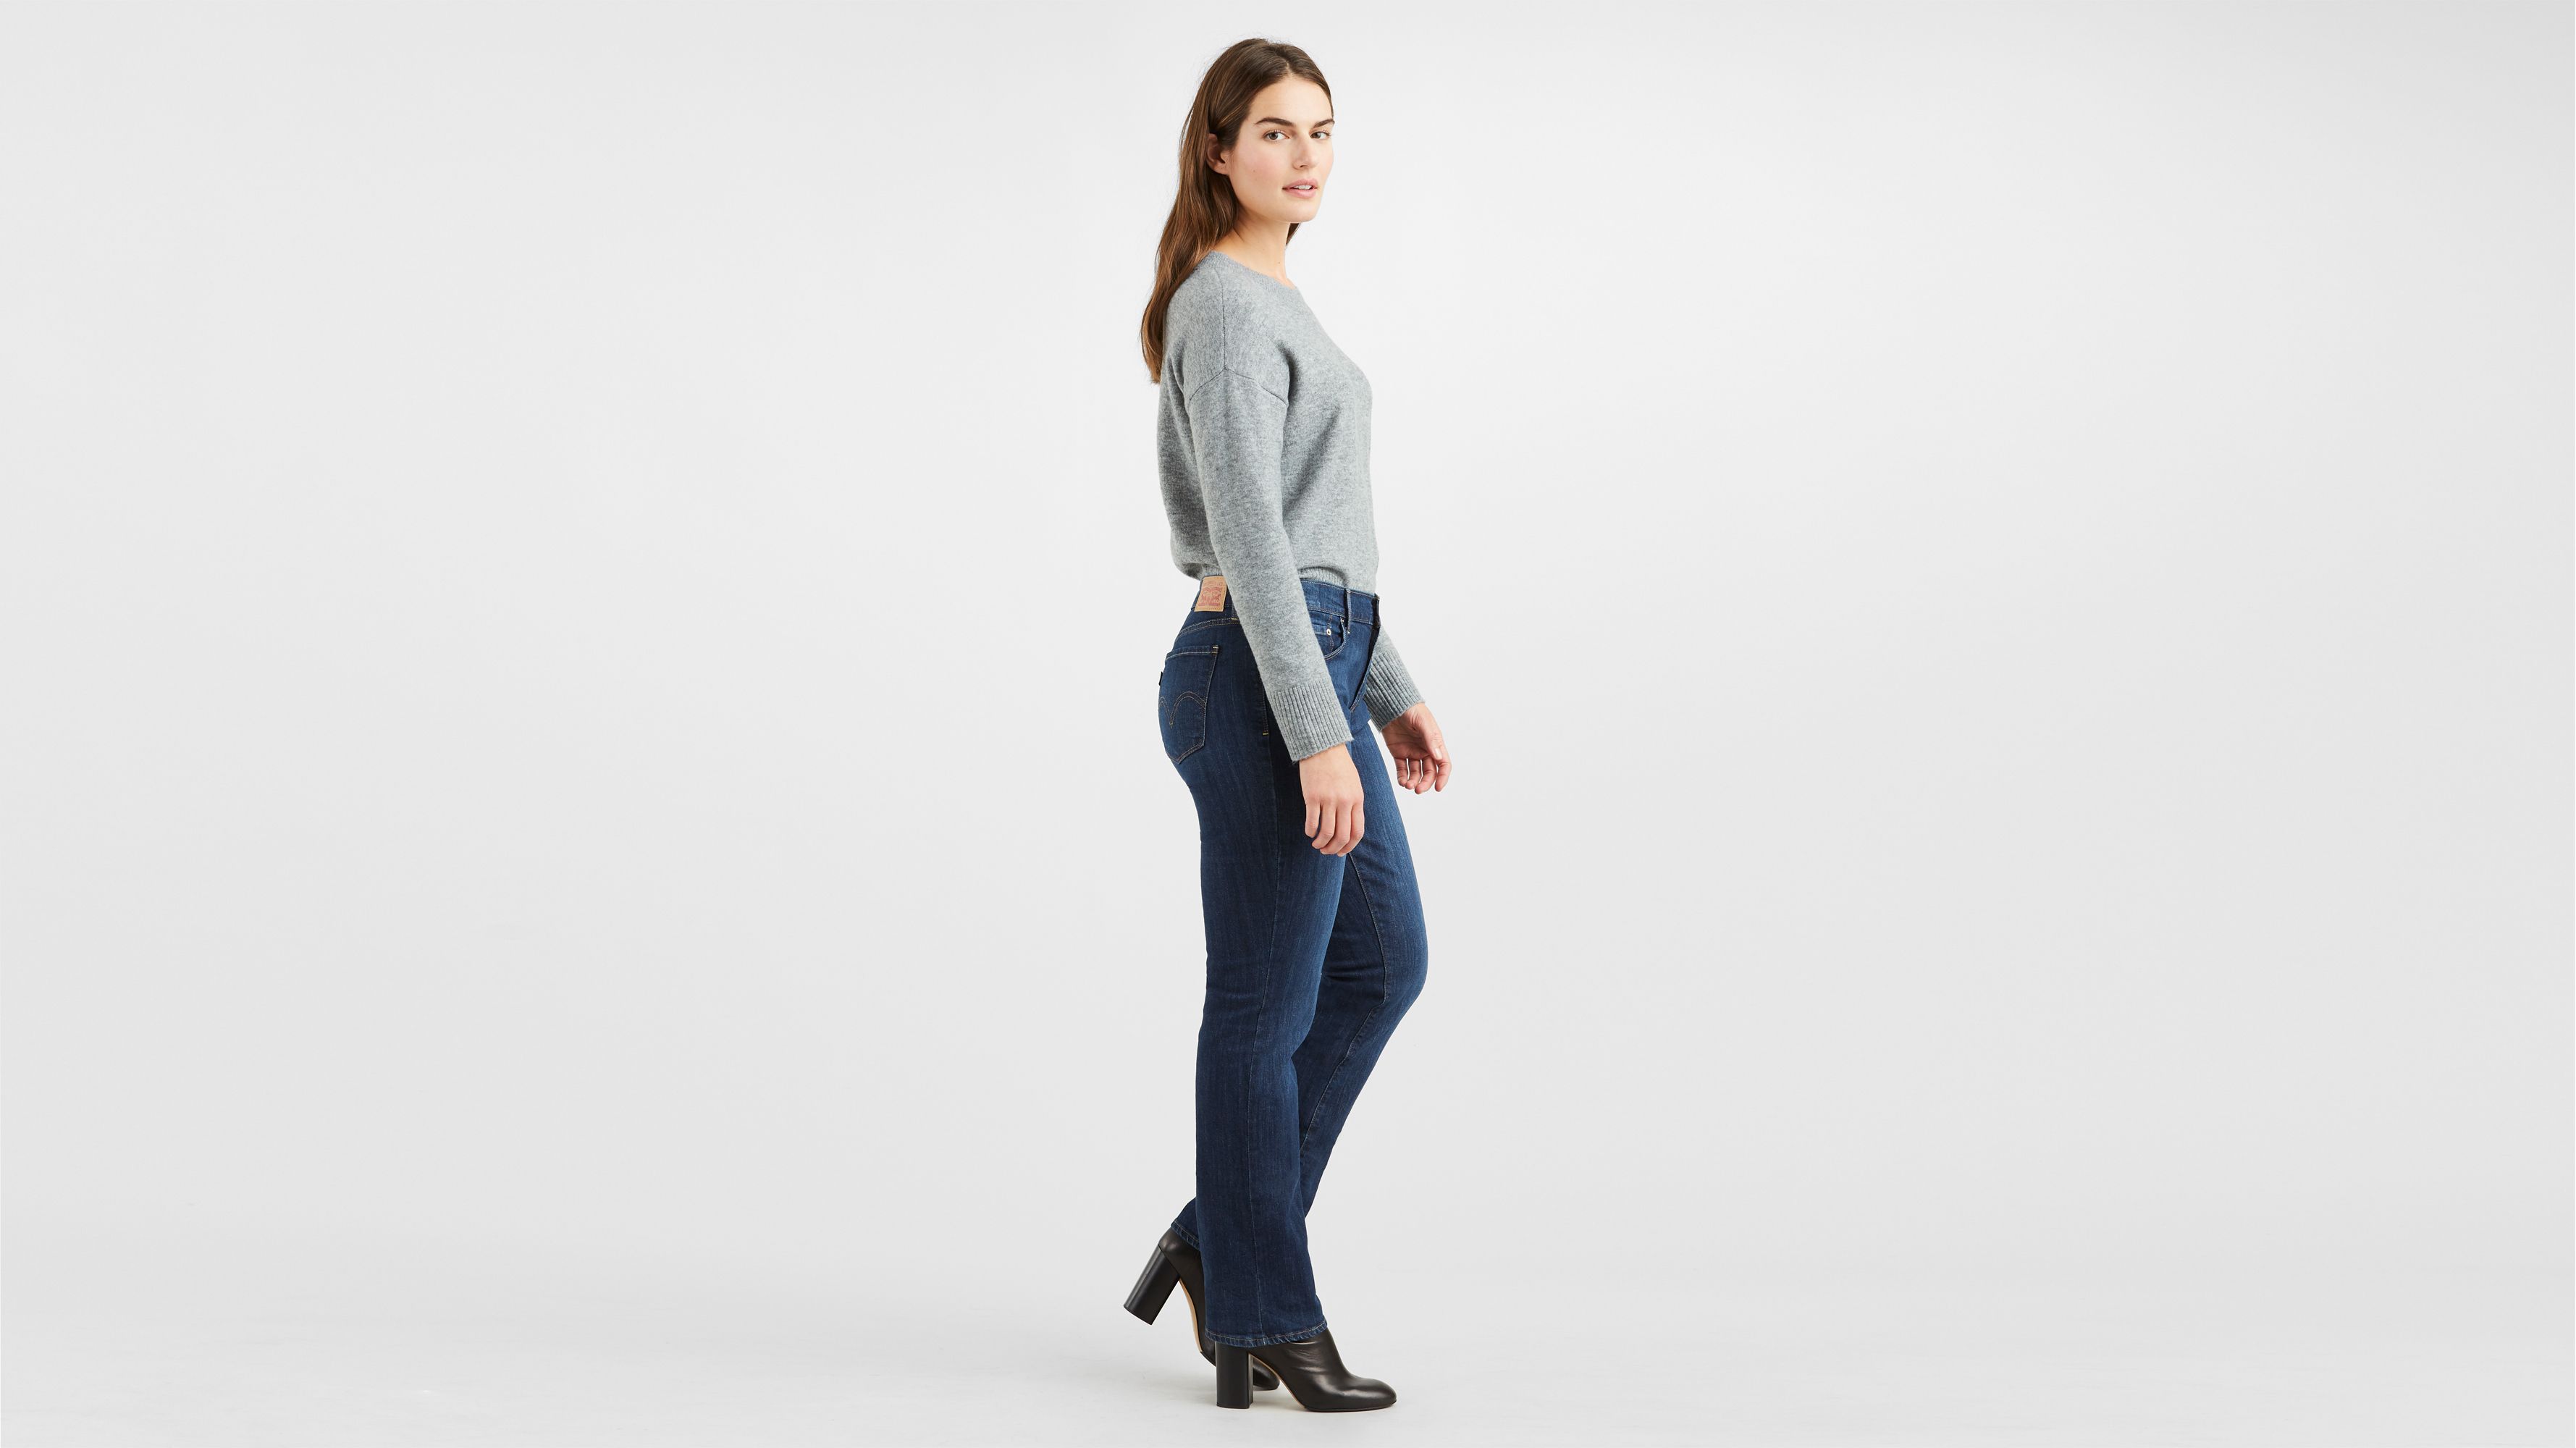 levis 505 womens jeans